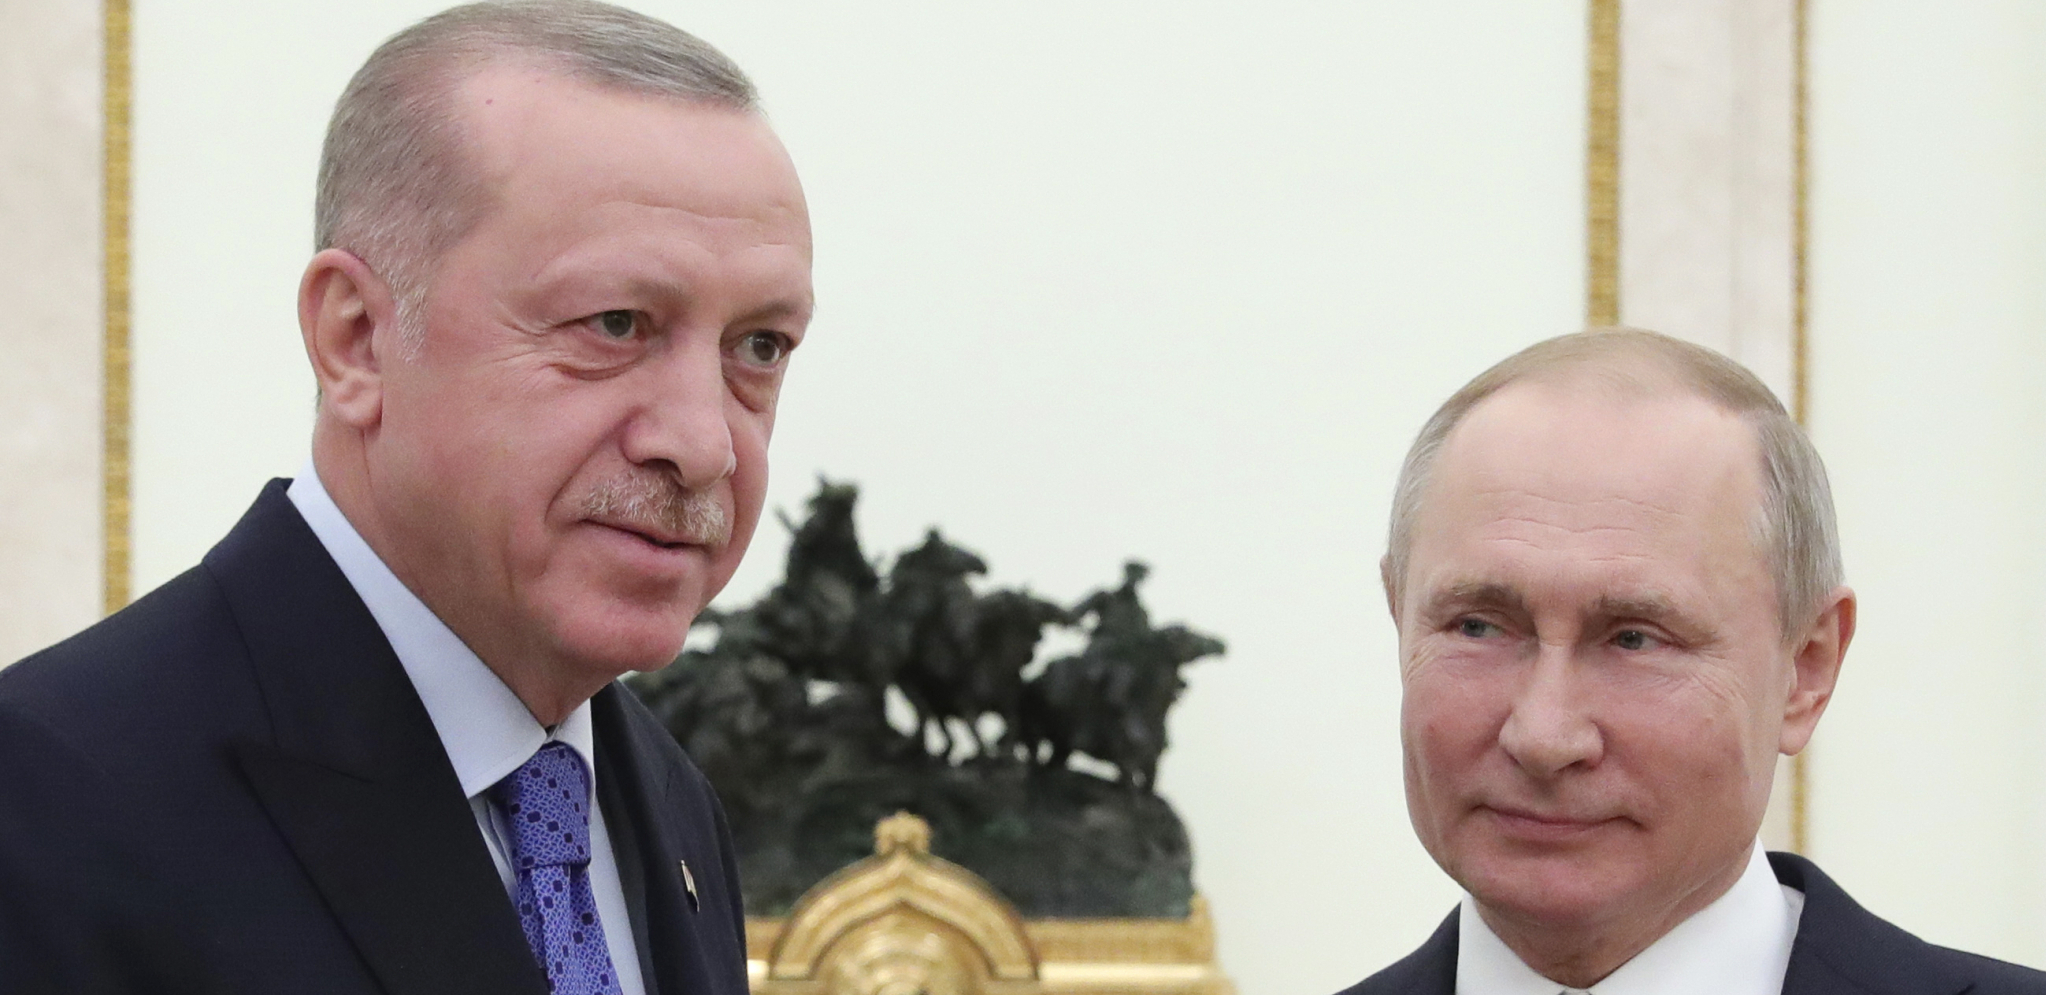 ERDOGAN NAJAVIO VELIKE PLANOVE ZA TURSKU Putin se izjasnio, najavljen razgovor sa liderima Azerbejdžana i Turkmenistana